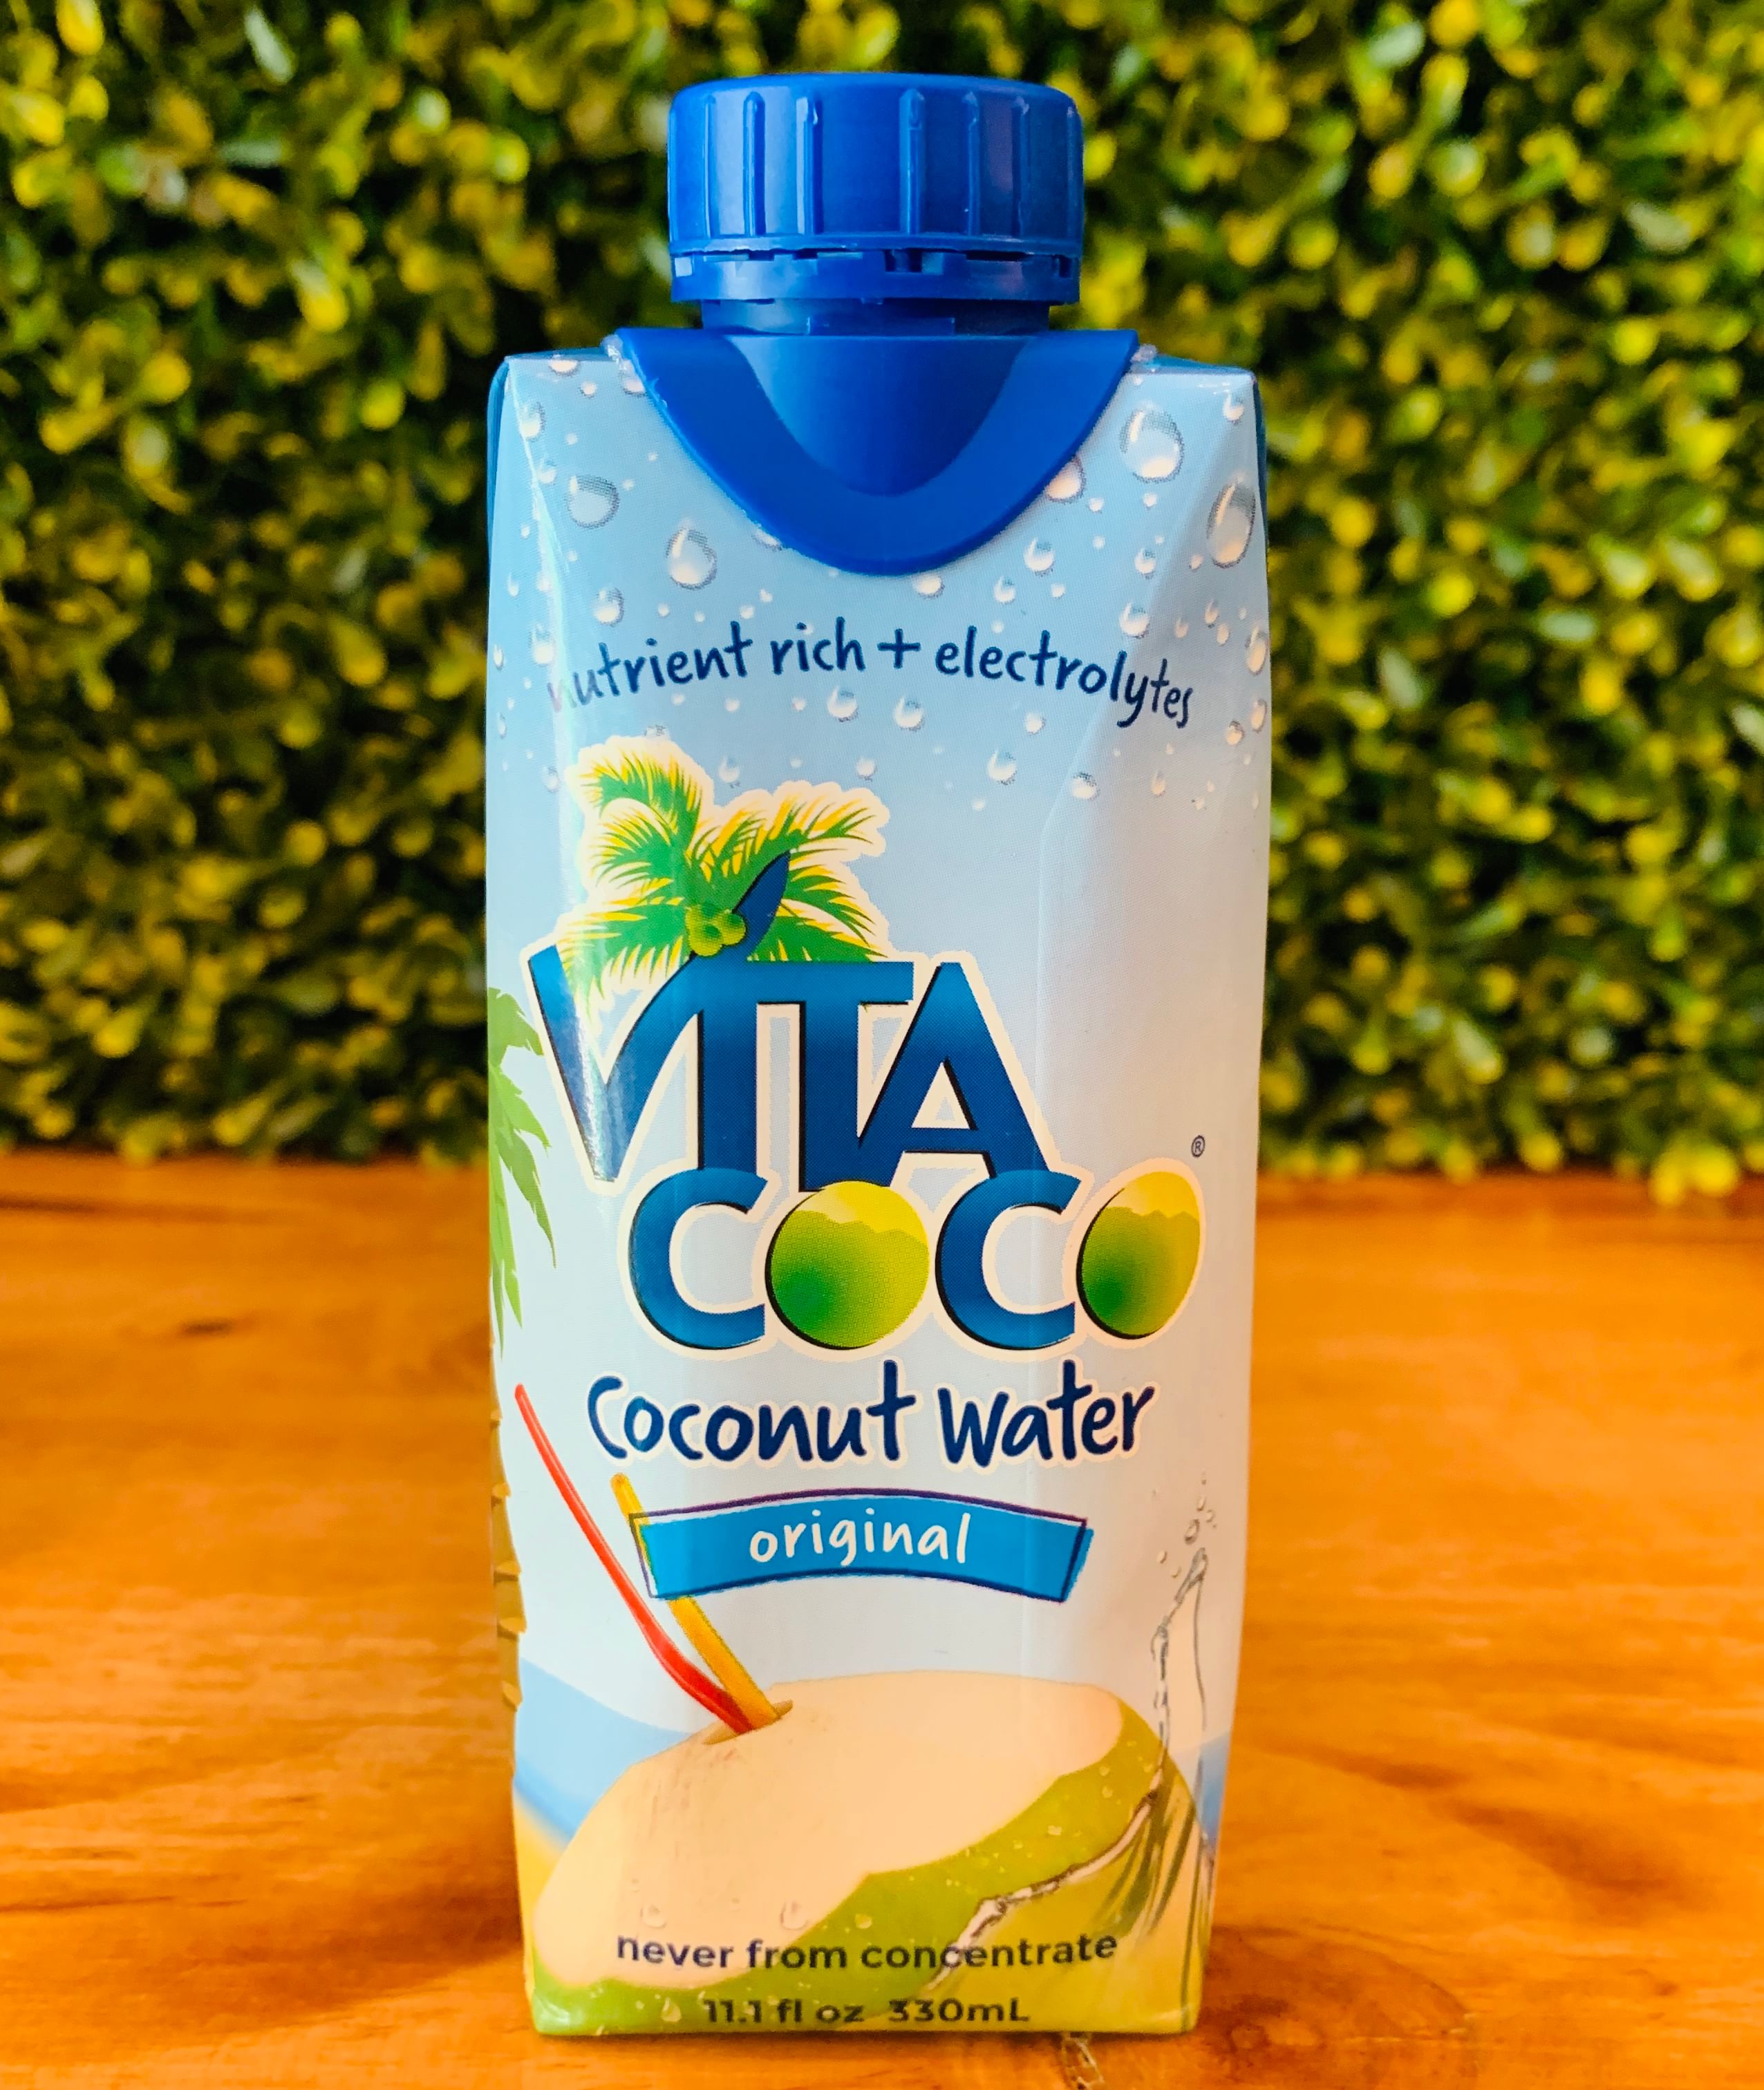 VitaCoco Coconut Water